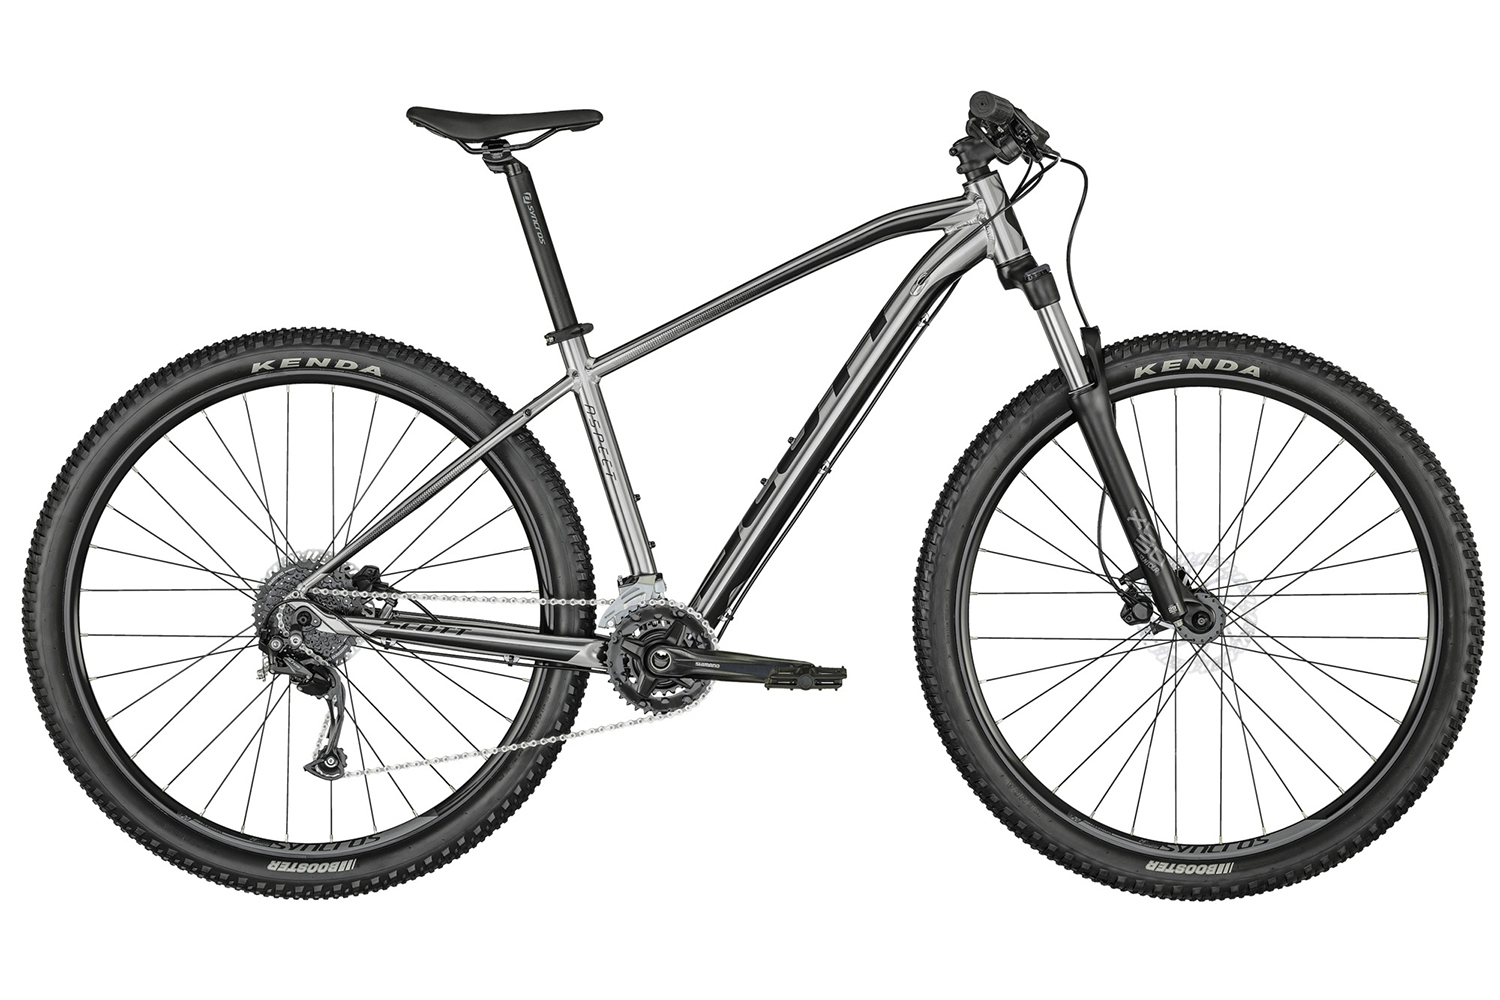  Отзывы о Горном велосипеде Scott Aspect 750 2022